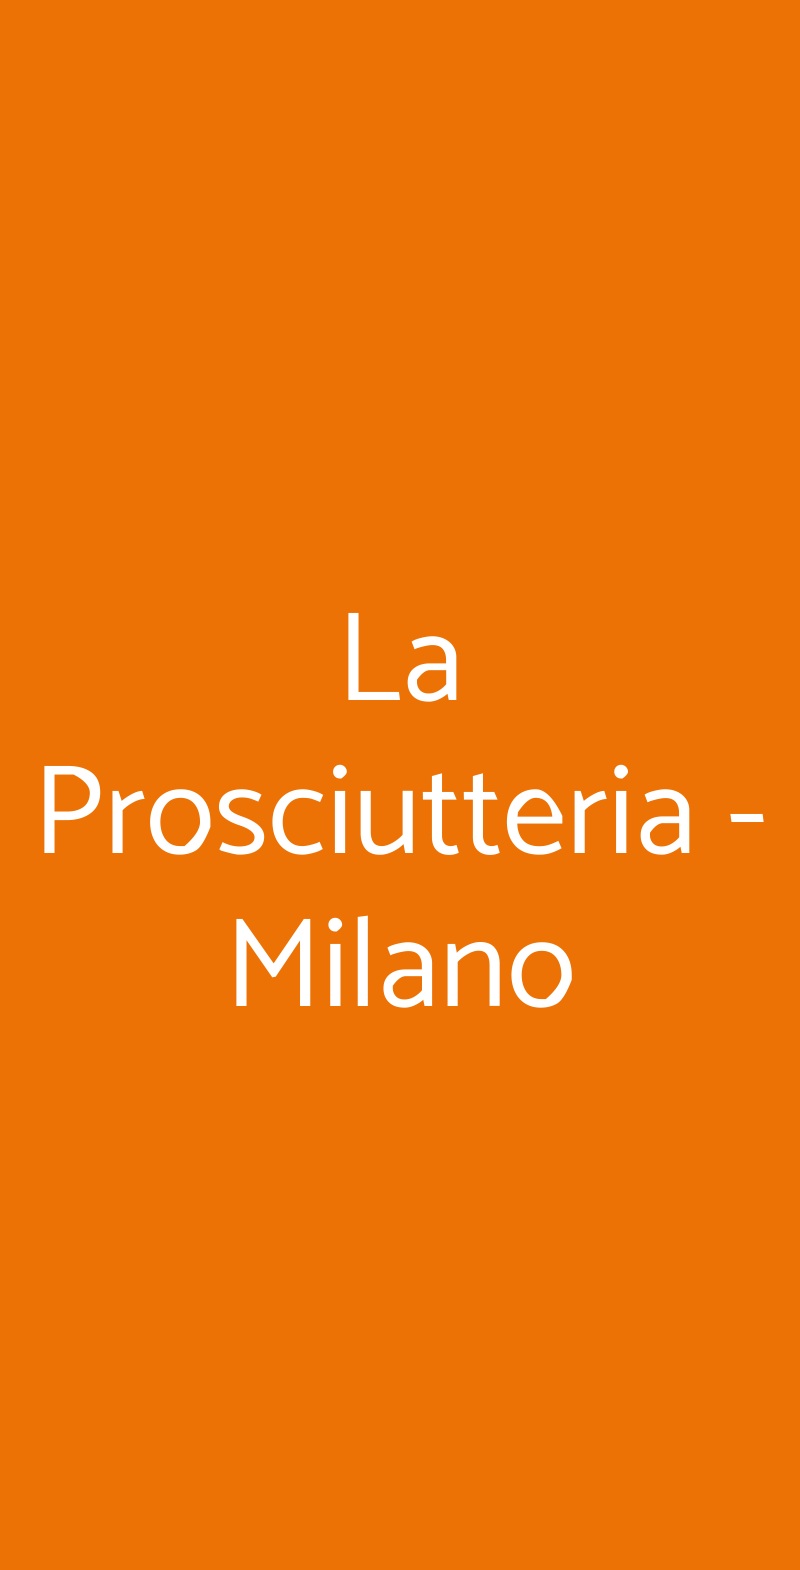 La Prosciutteria - Milano Milano menù 1 pagina